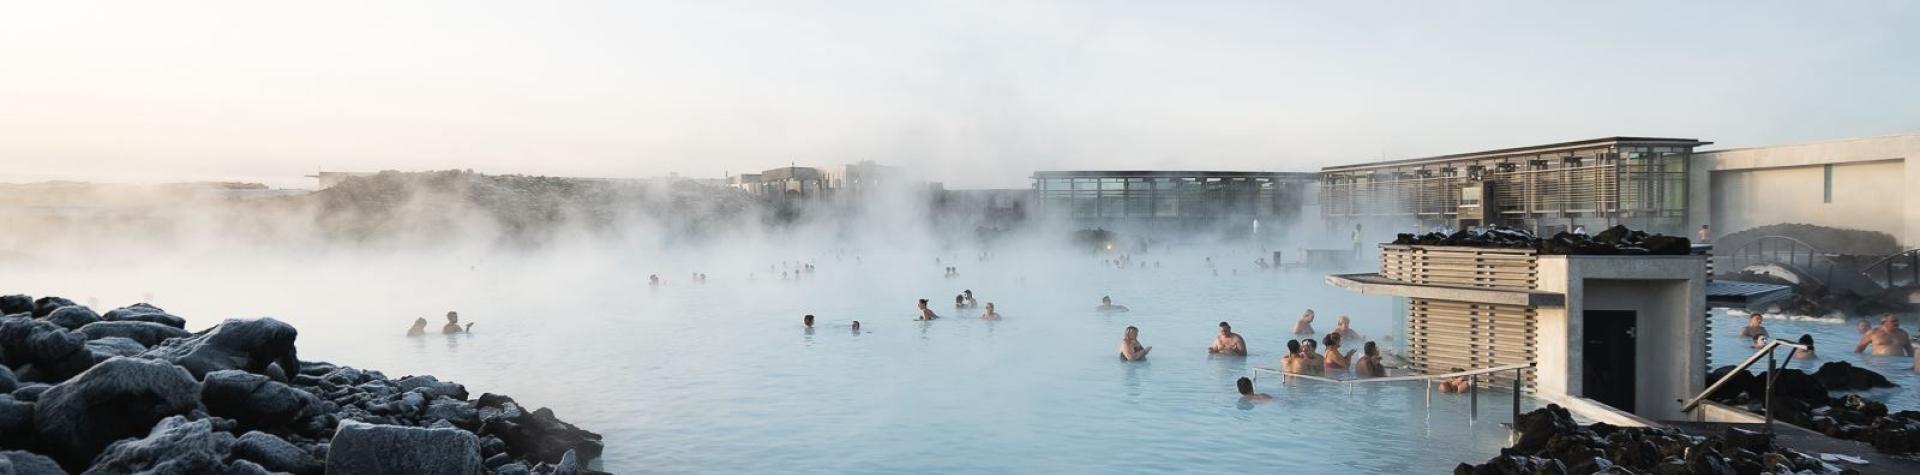 Reykjavík - Blue Lagoon Comfort including admission